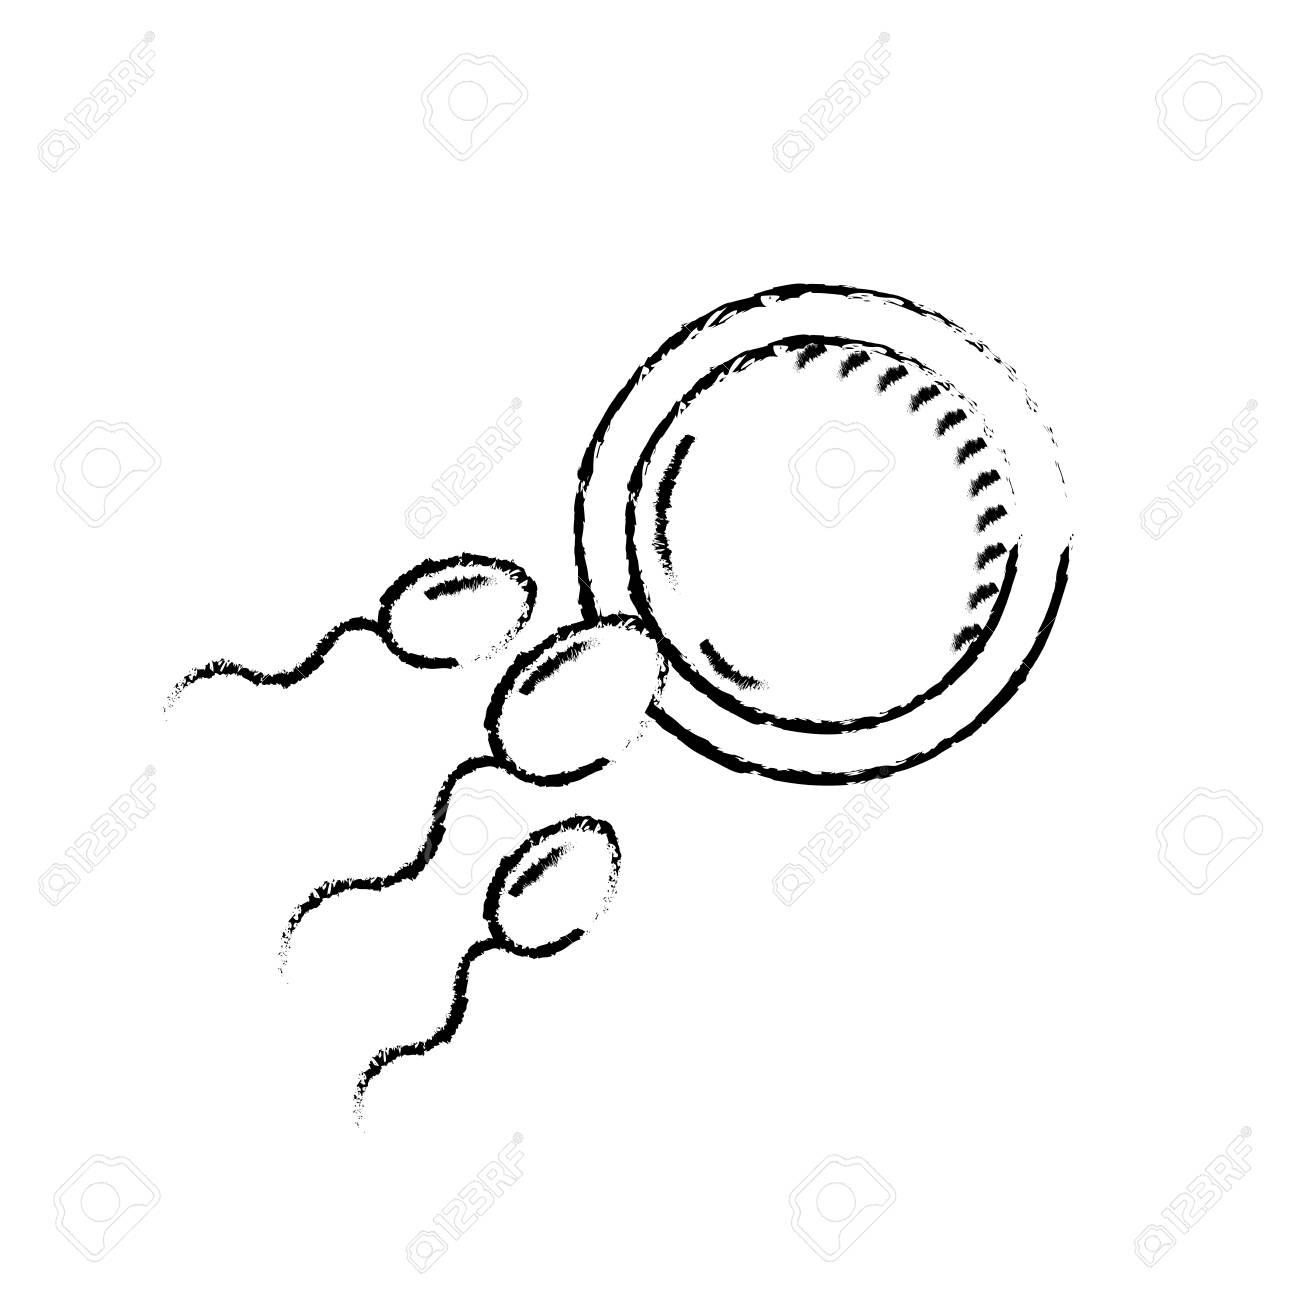 Figure Fertility Reproduction Of Ovum And Spermatozoon avec Reproduire Une Figure